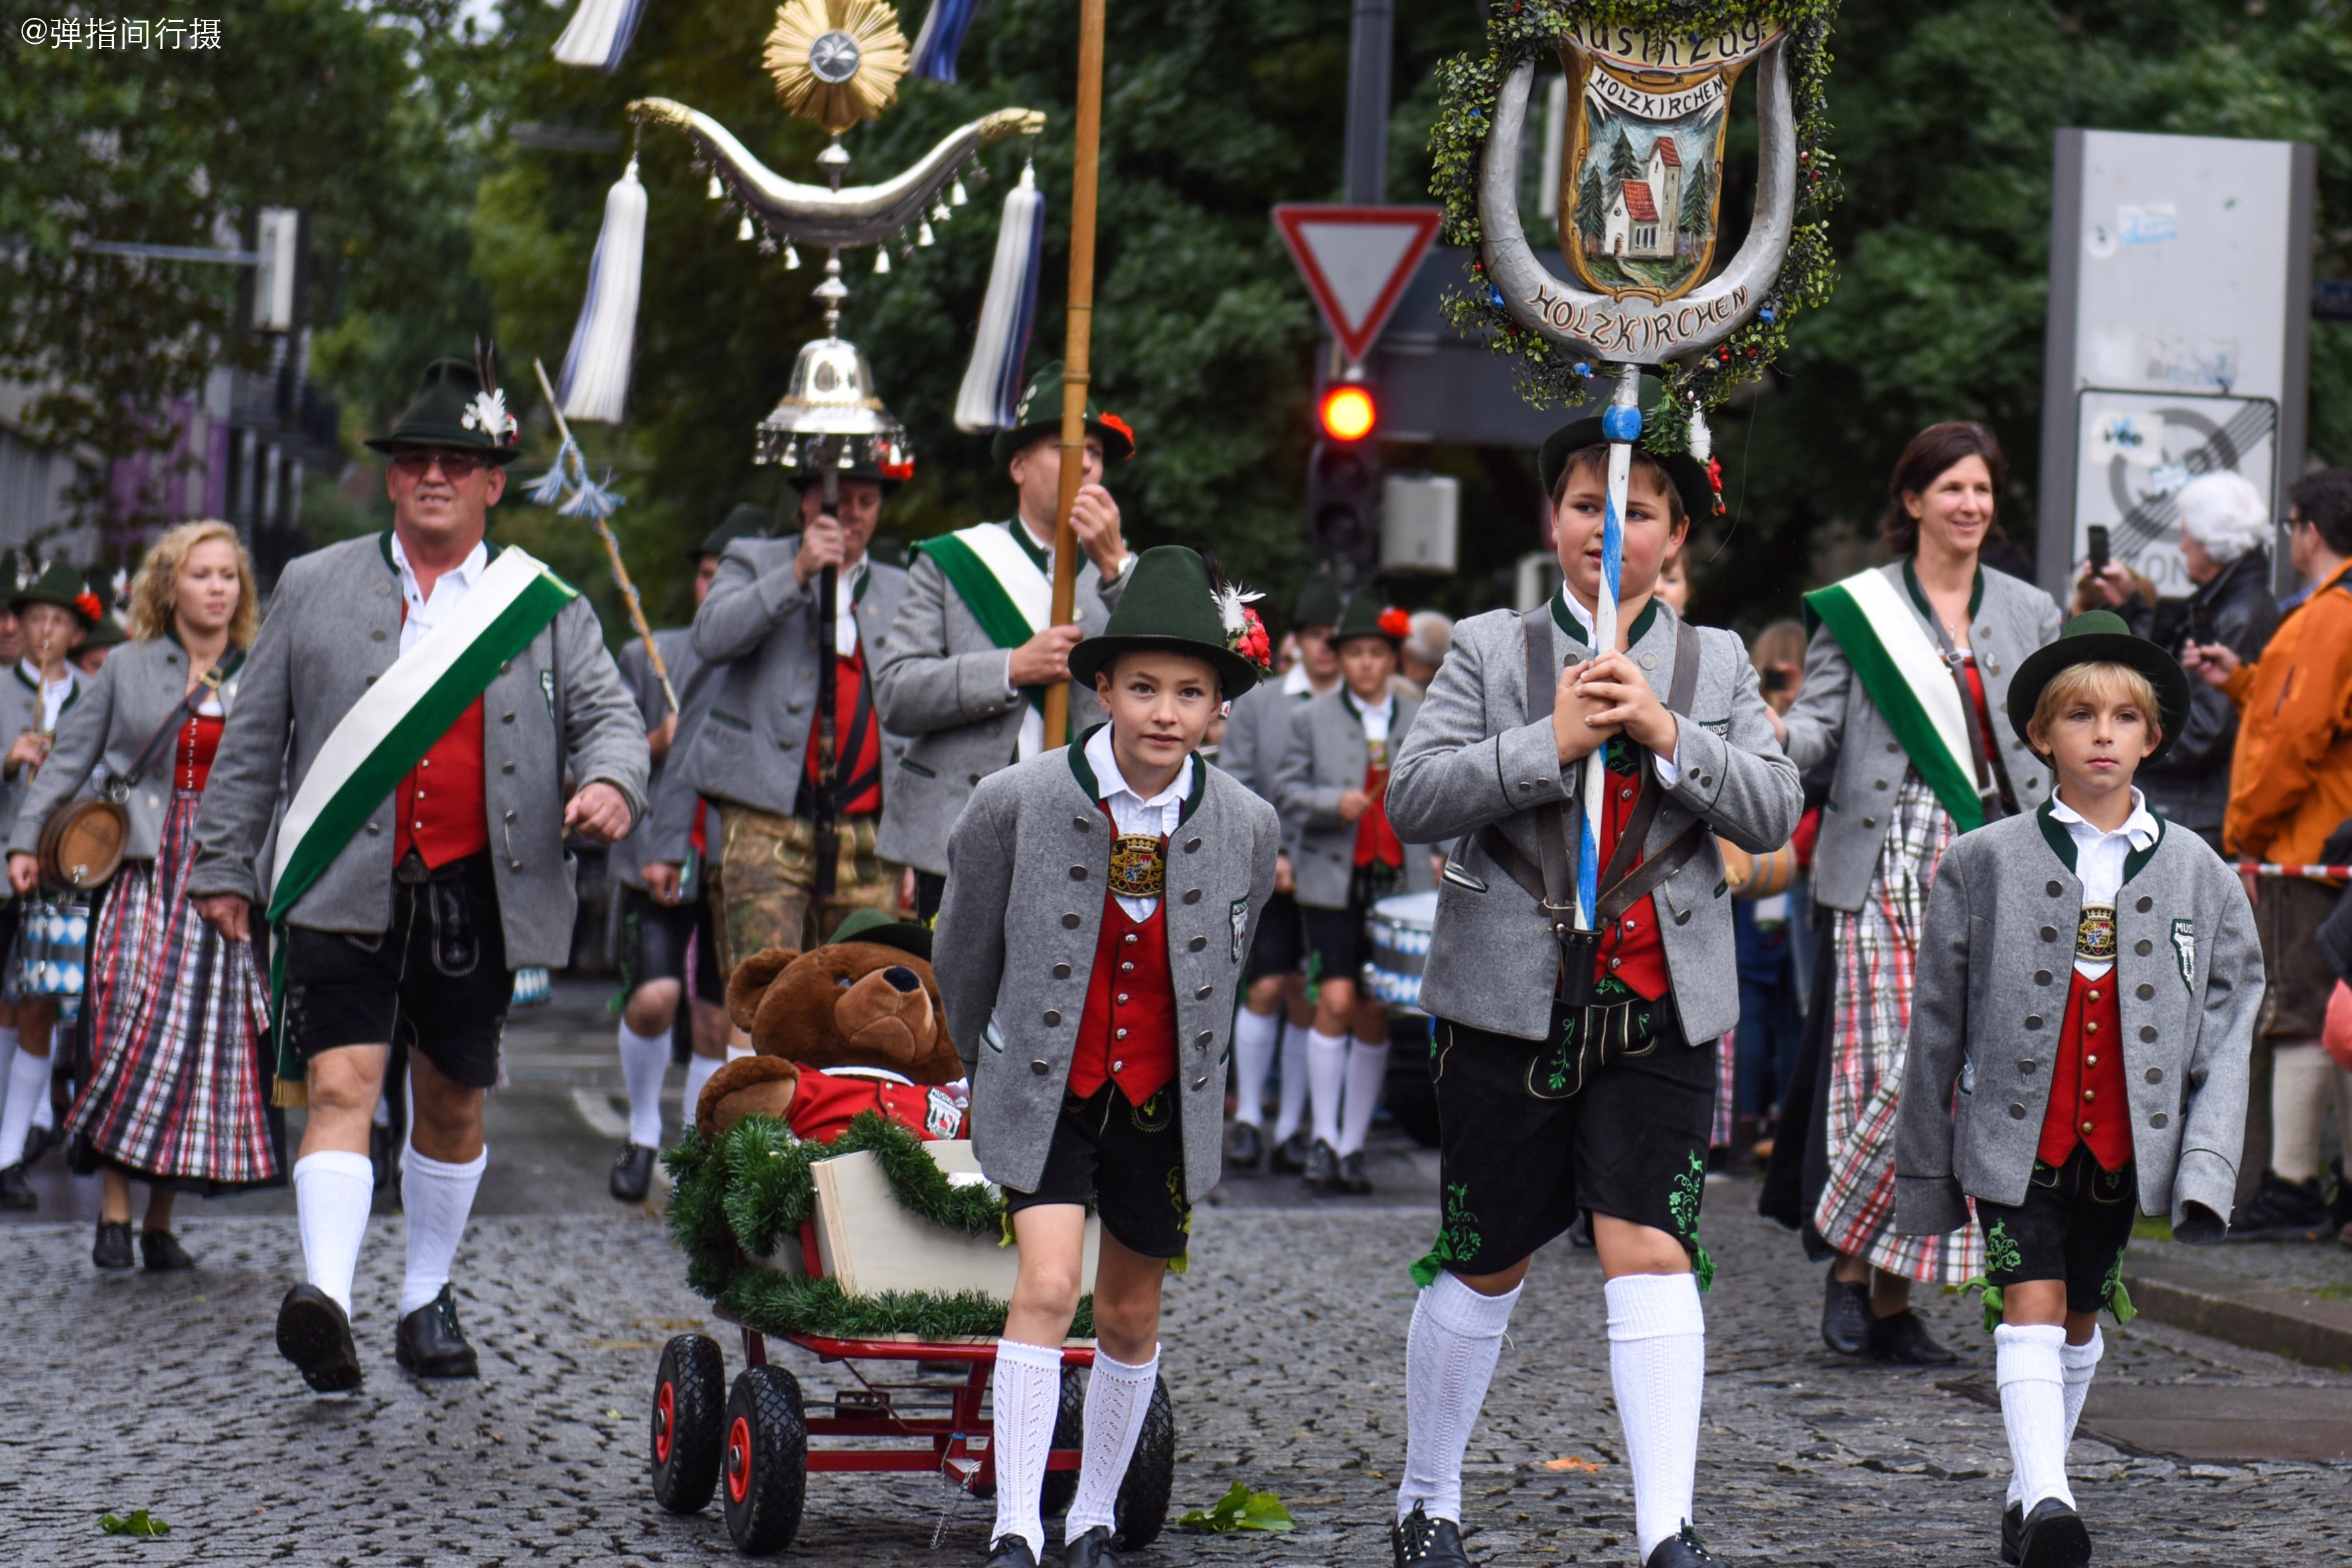 高度发达的德国,全民传承传统文化,爱穿民族服装游行狂欢